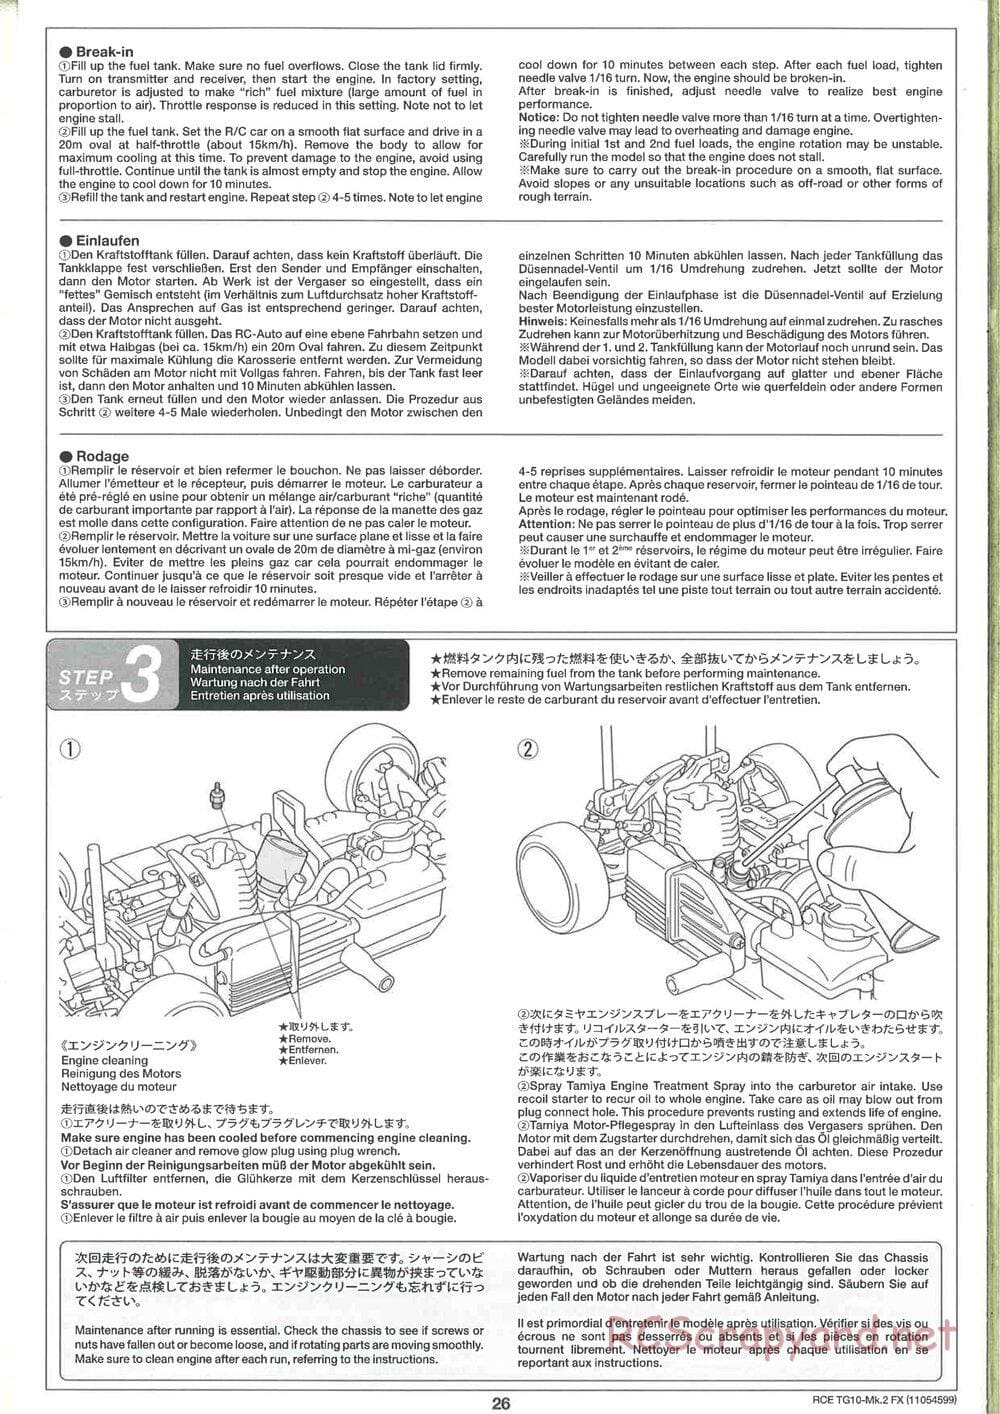 Tamiya - TG10 Mk.2 FX Chassis - Manual - Page 26